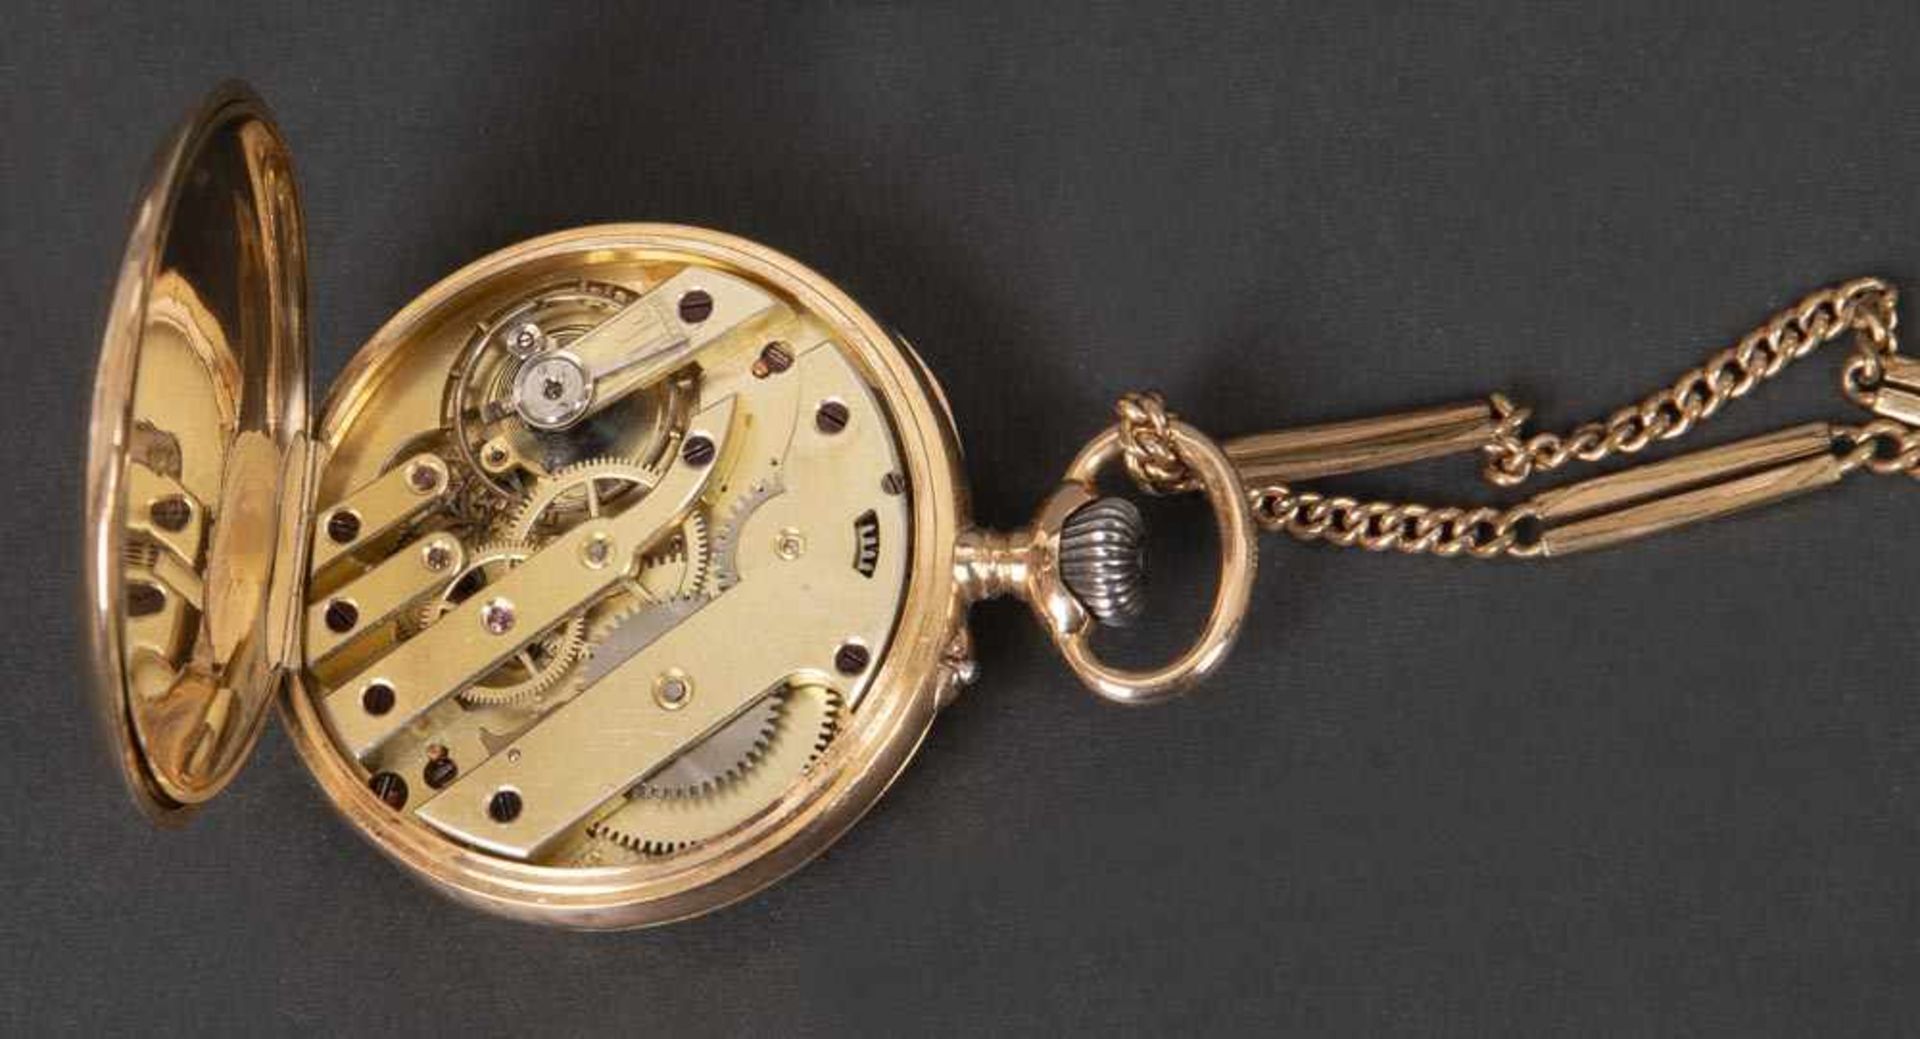 Herrentaschenuhr. 18 ct Gelbgold, ca. 27 g, mit vergoldeter Uhrenkette. (Gängigkeit ungeprüft) - Bild 2 aus 2